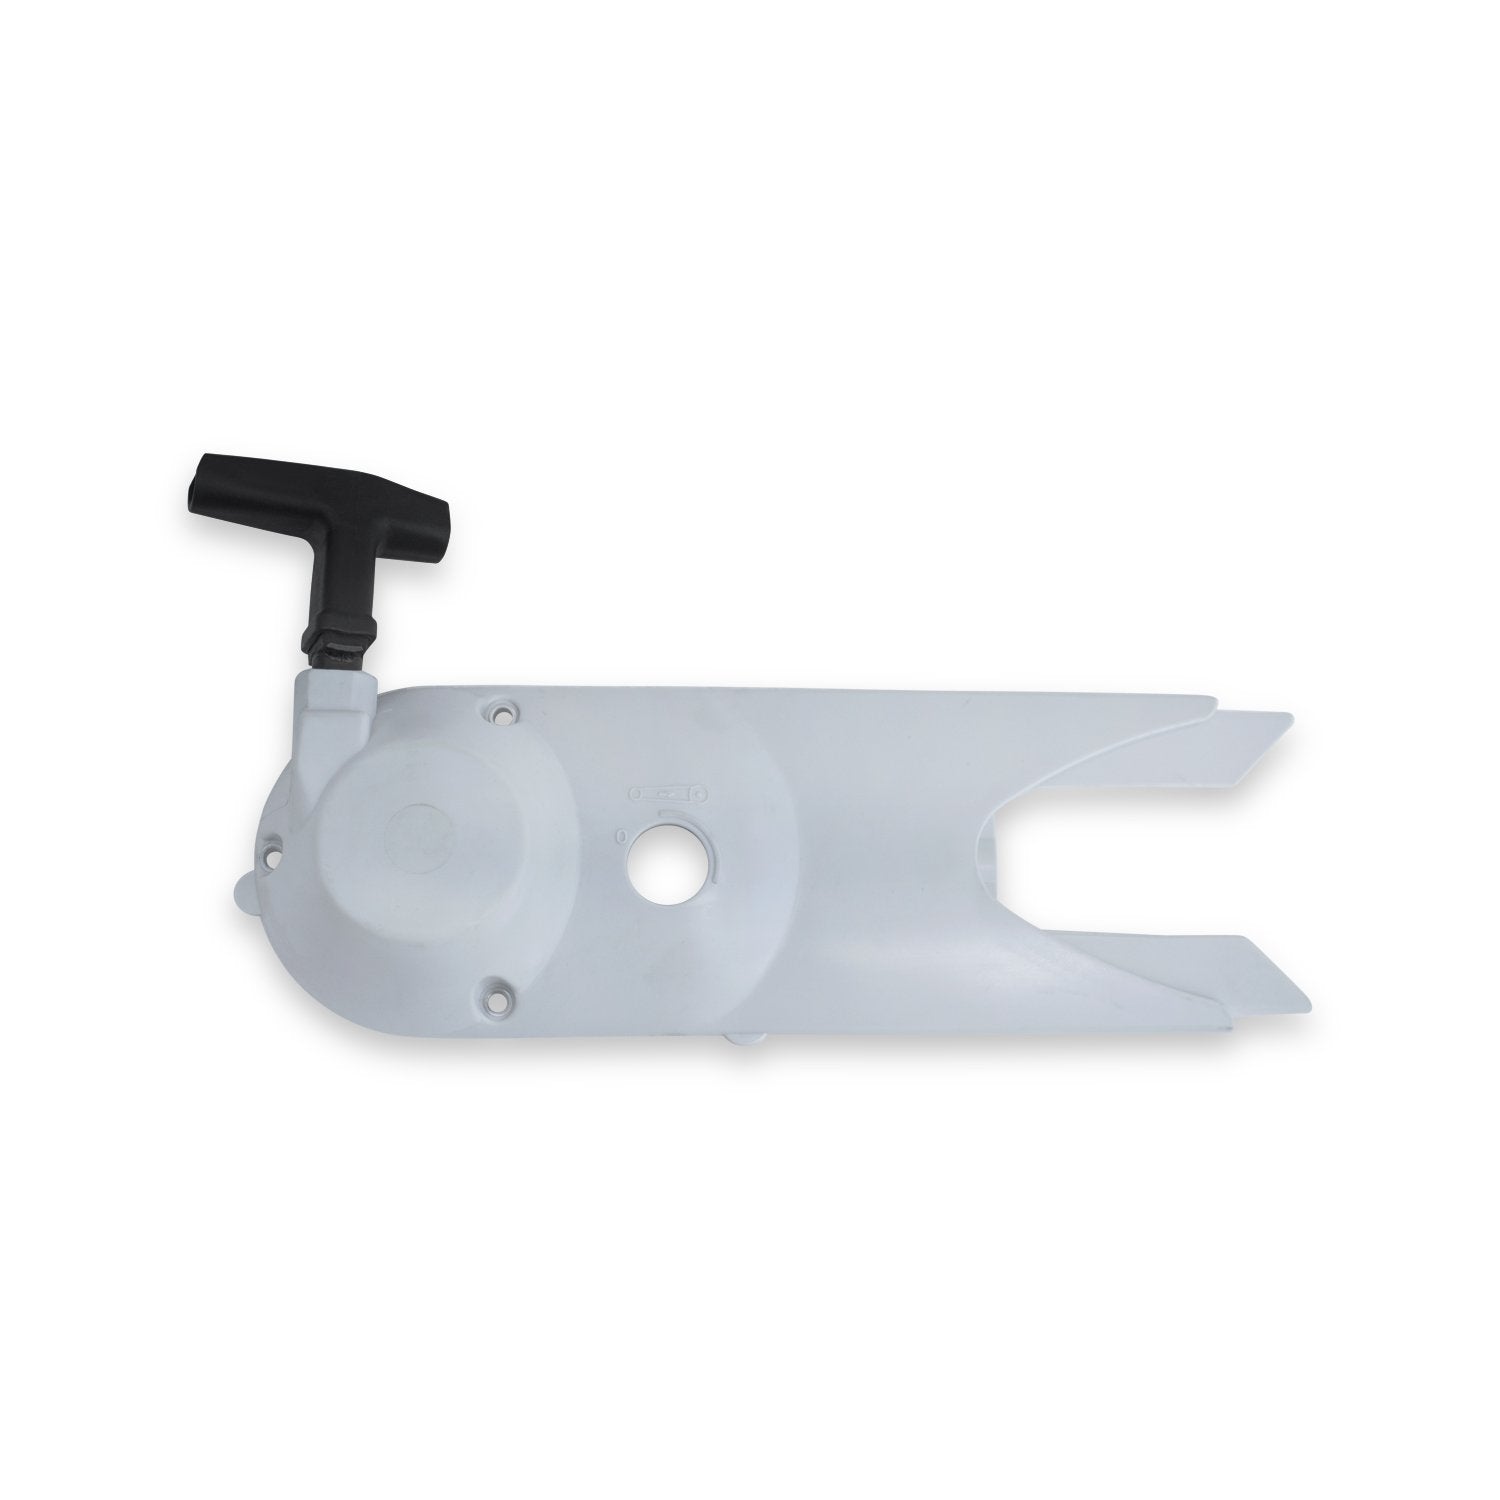 Recoil Pull Starter fits Stihl Cut-Off Saw TS400 OEM 4223-190-0401